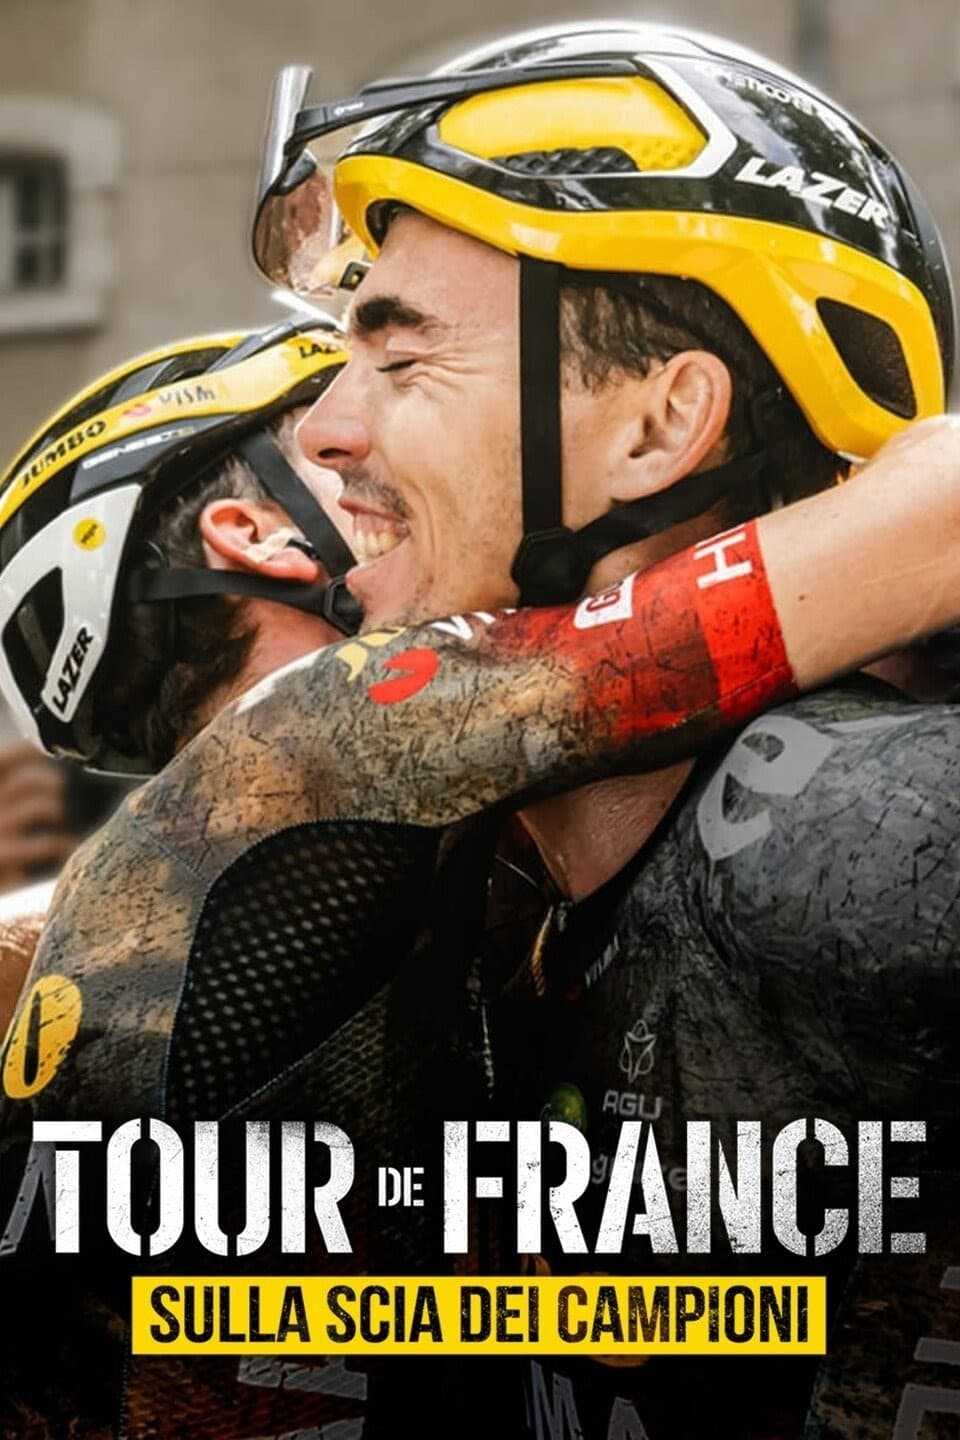 Tour de France - Sulla scia dei campioni in streaming